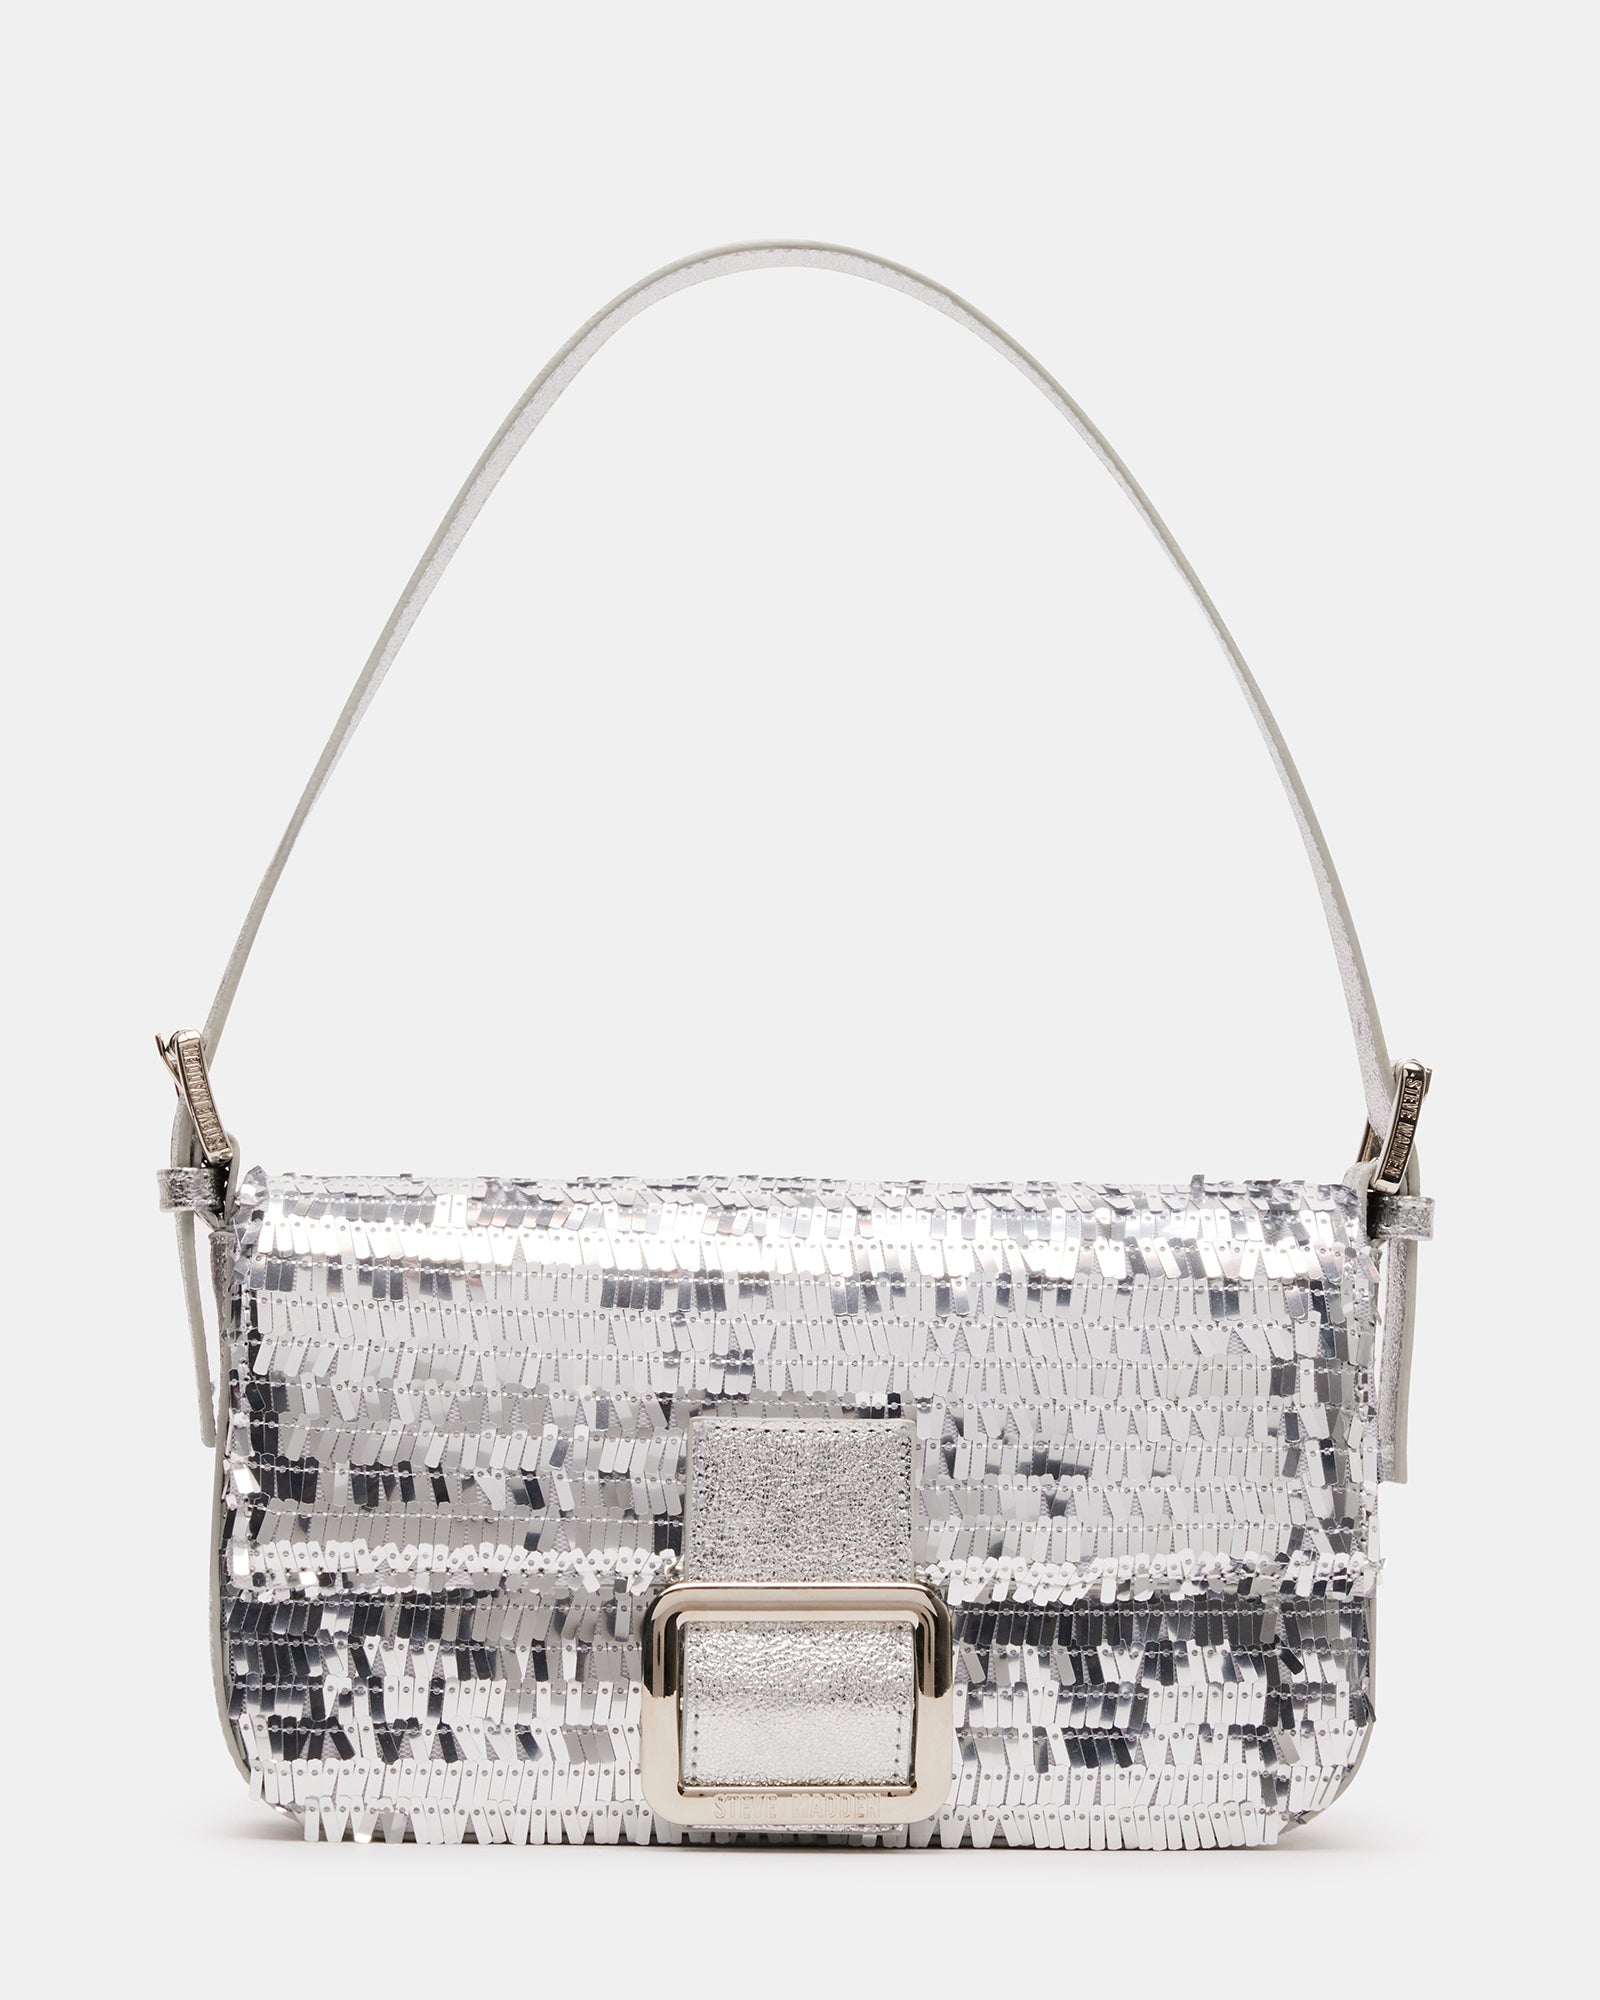 Baguette glitter handbag